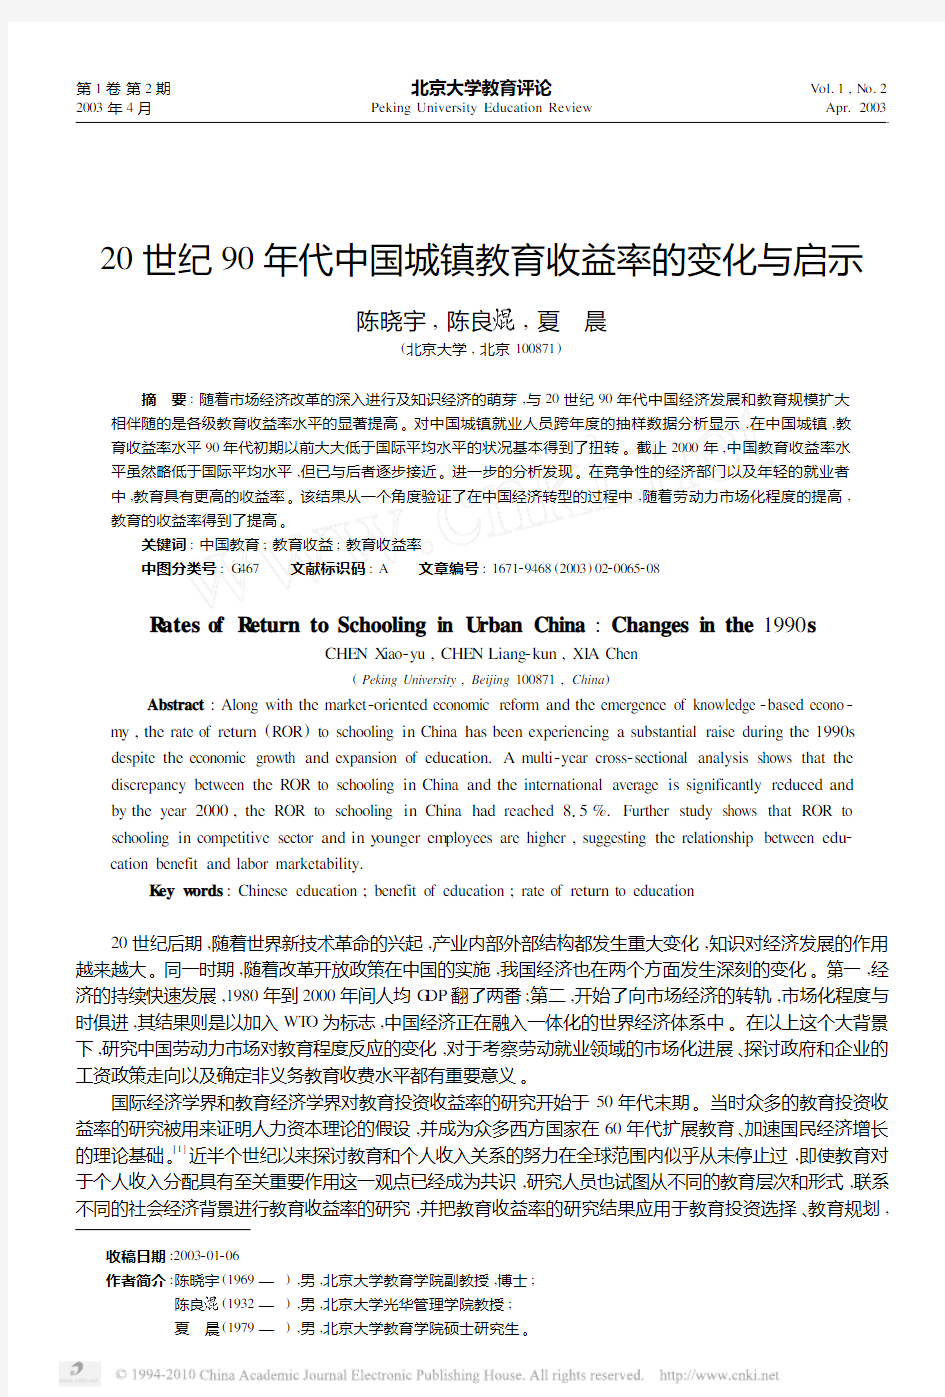 陈晓宇-20世纪90年代中国城镇教育收益率的变化与启示